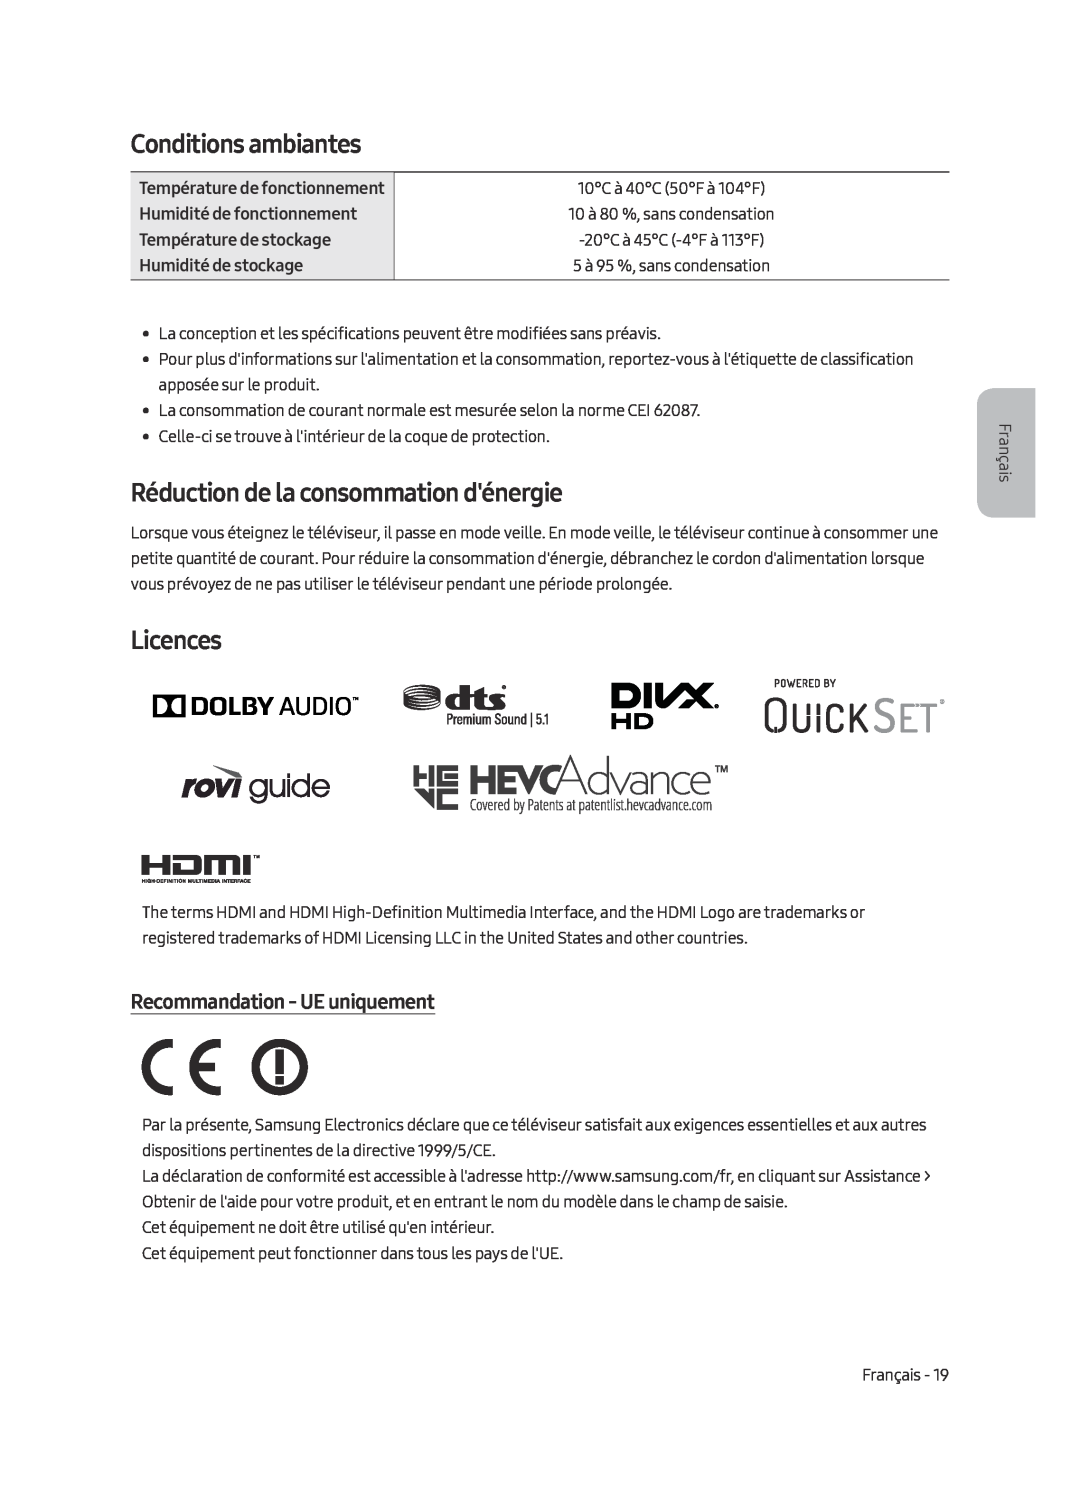 Samsung UE49MU9000TXXU manual Conditions ambiantes, Réduction de la consommation dénergie, Recommandation - UE uniquement 